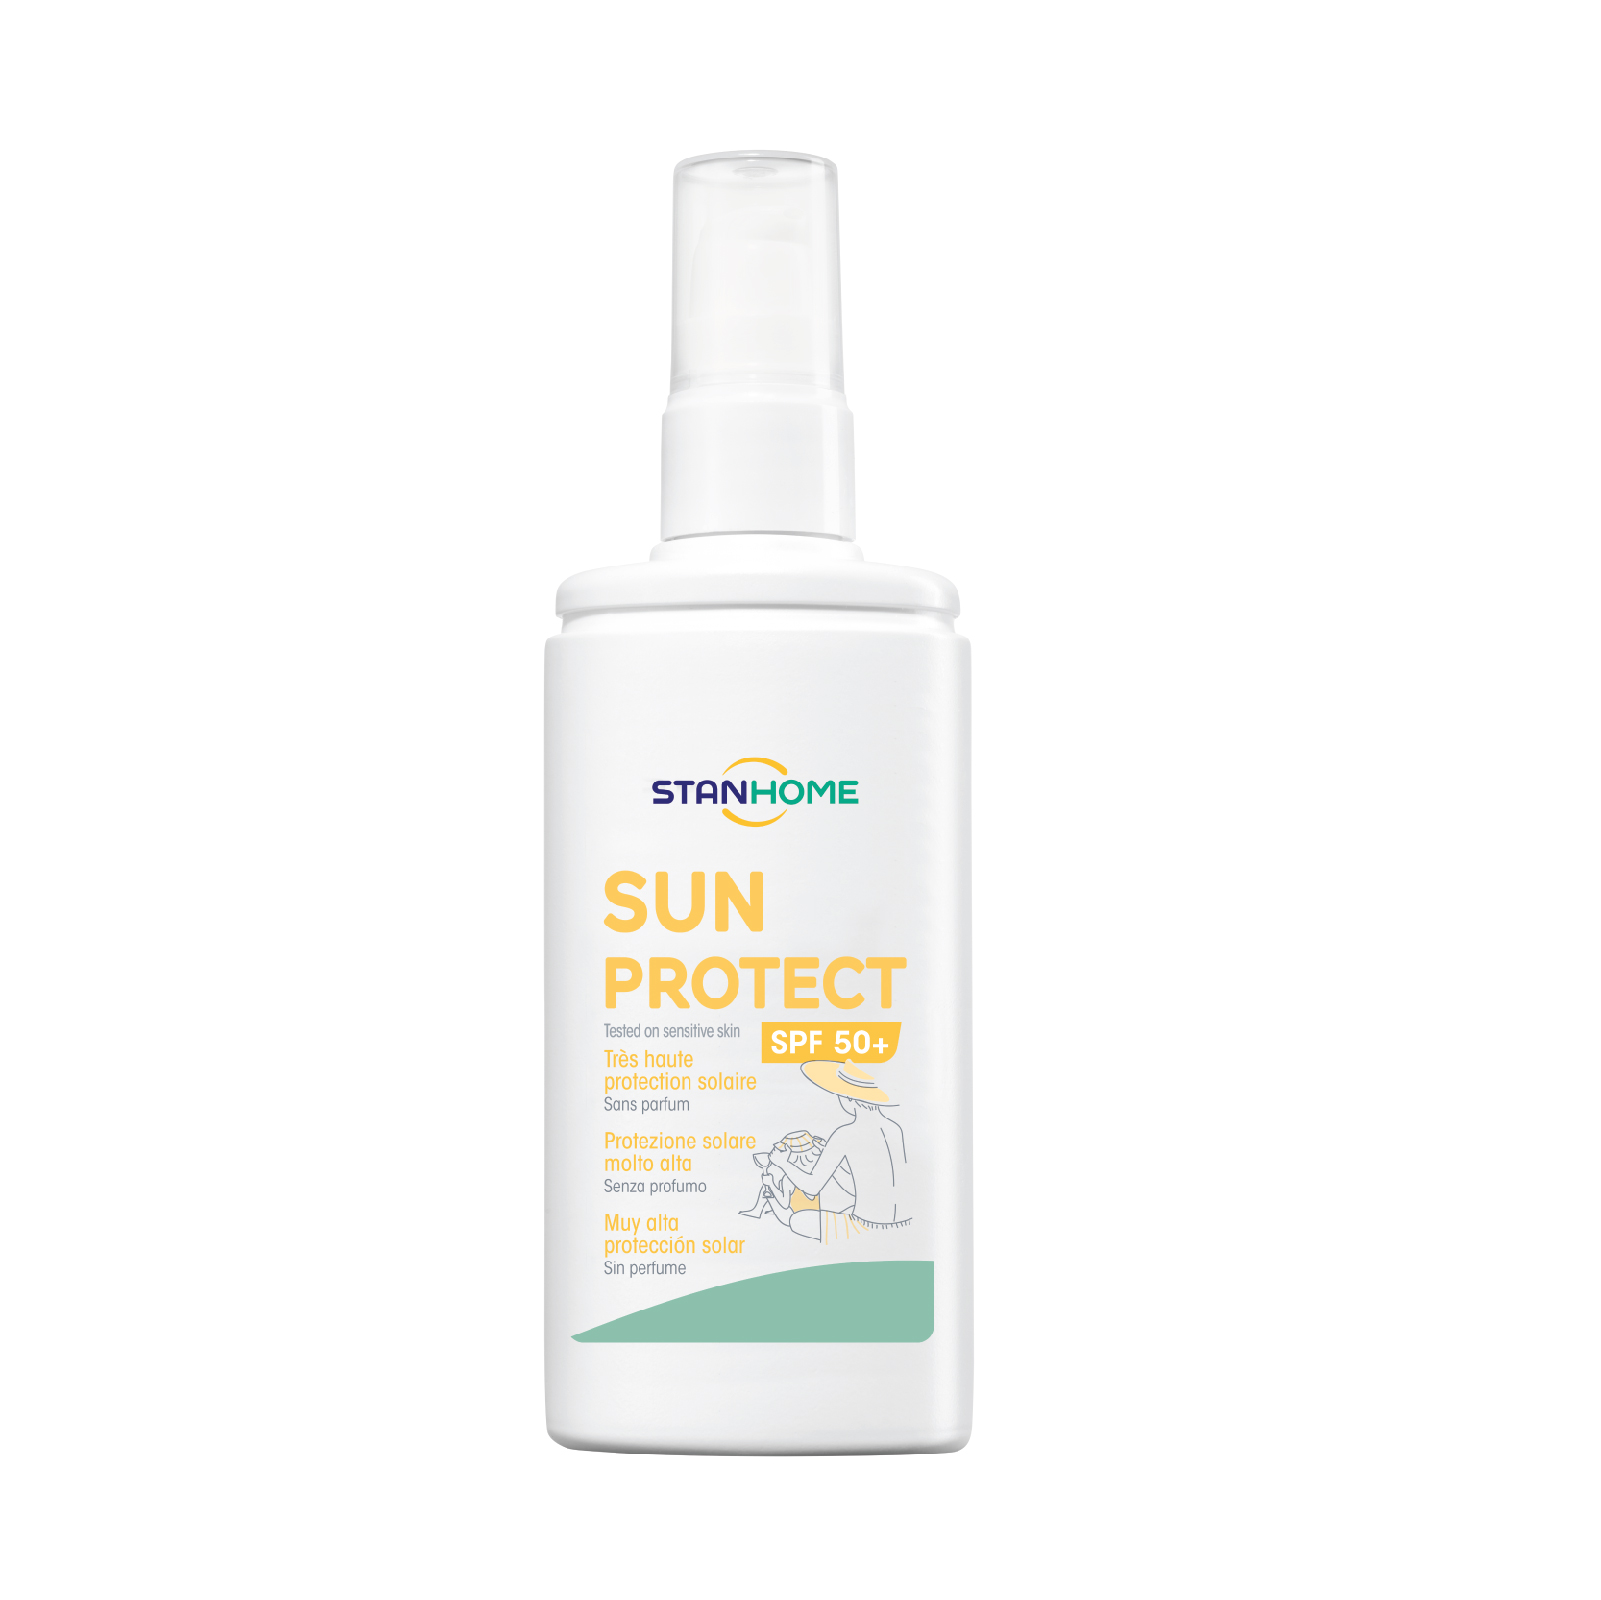 Kem chống nắng dưỡng ẩm cho da nhạy cảm chỉ số SPF 50+ Stanhome Sun Protect 125ml